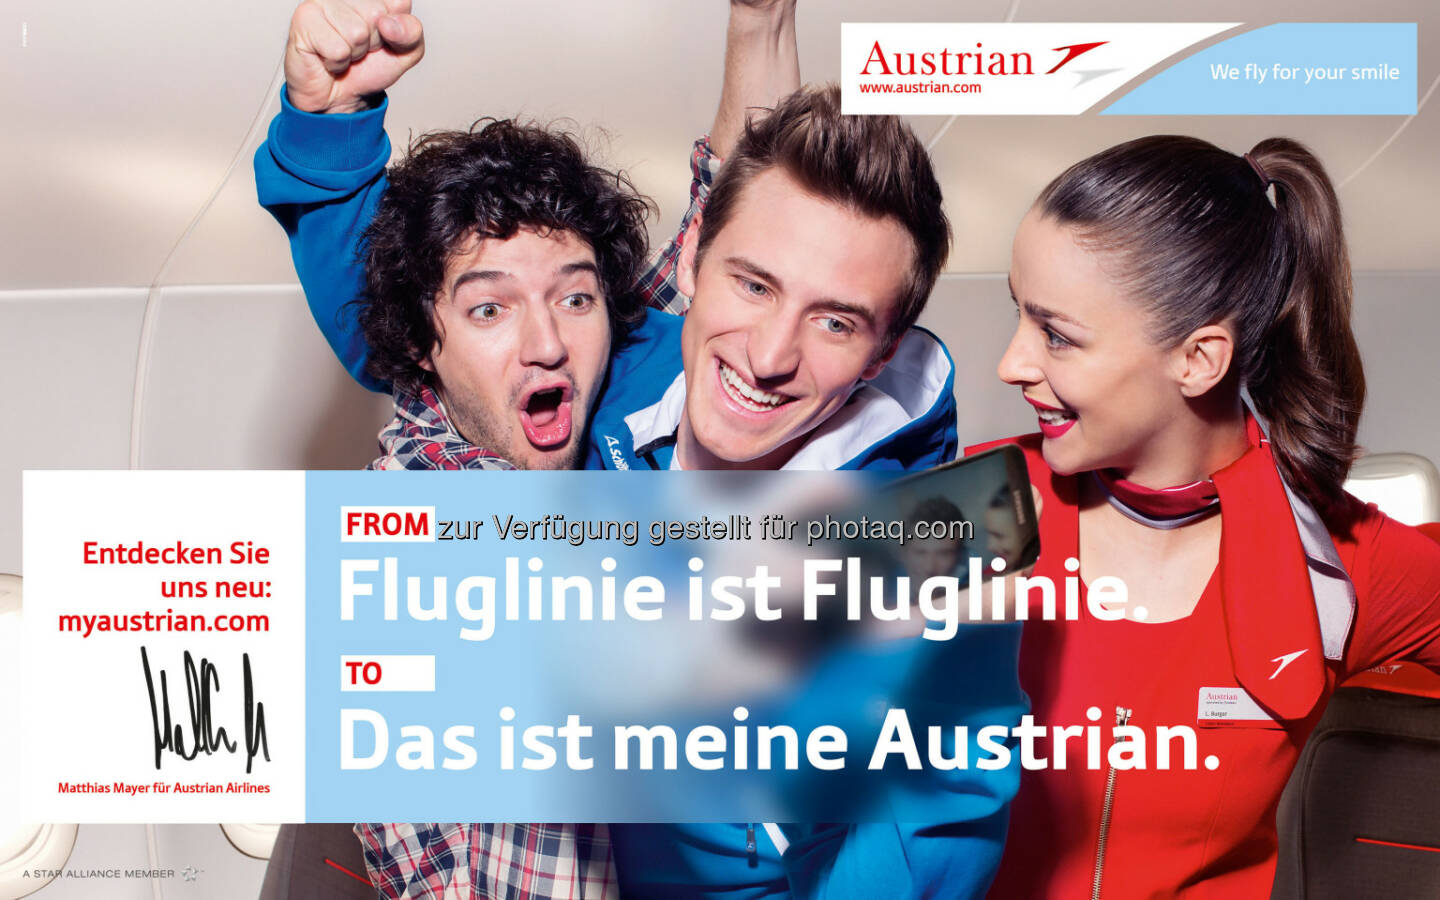 Matthias Mayer neues Austrian Airlines Werbegesicht